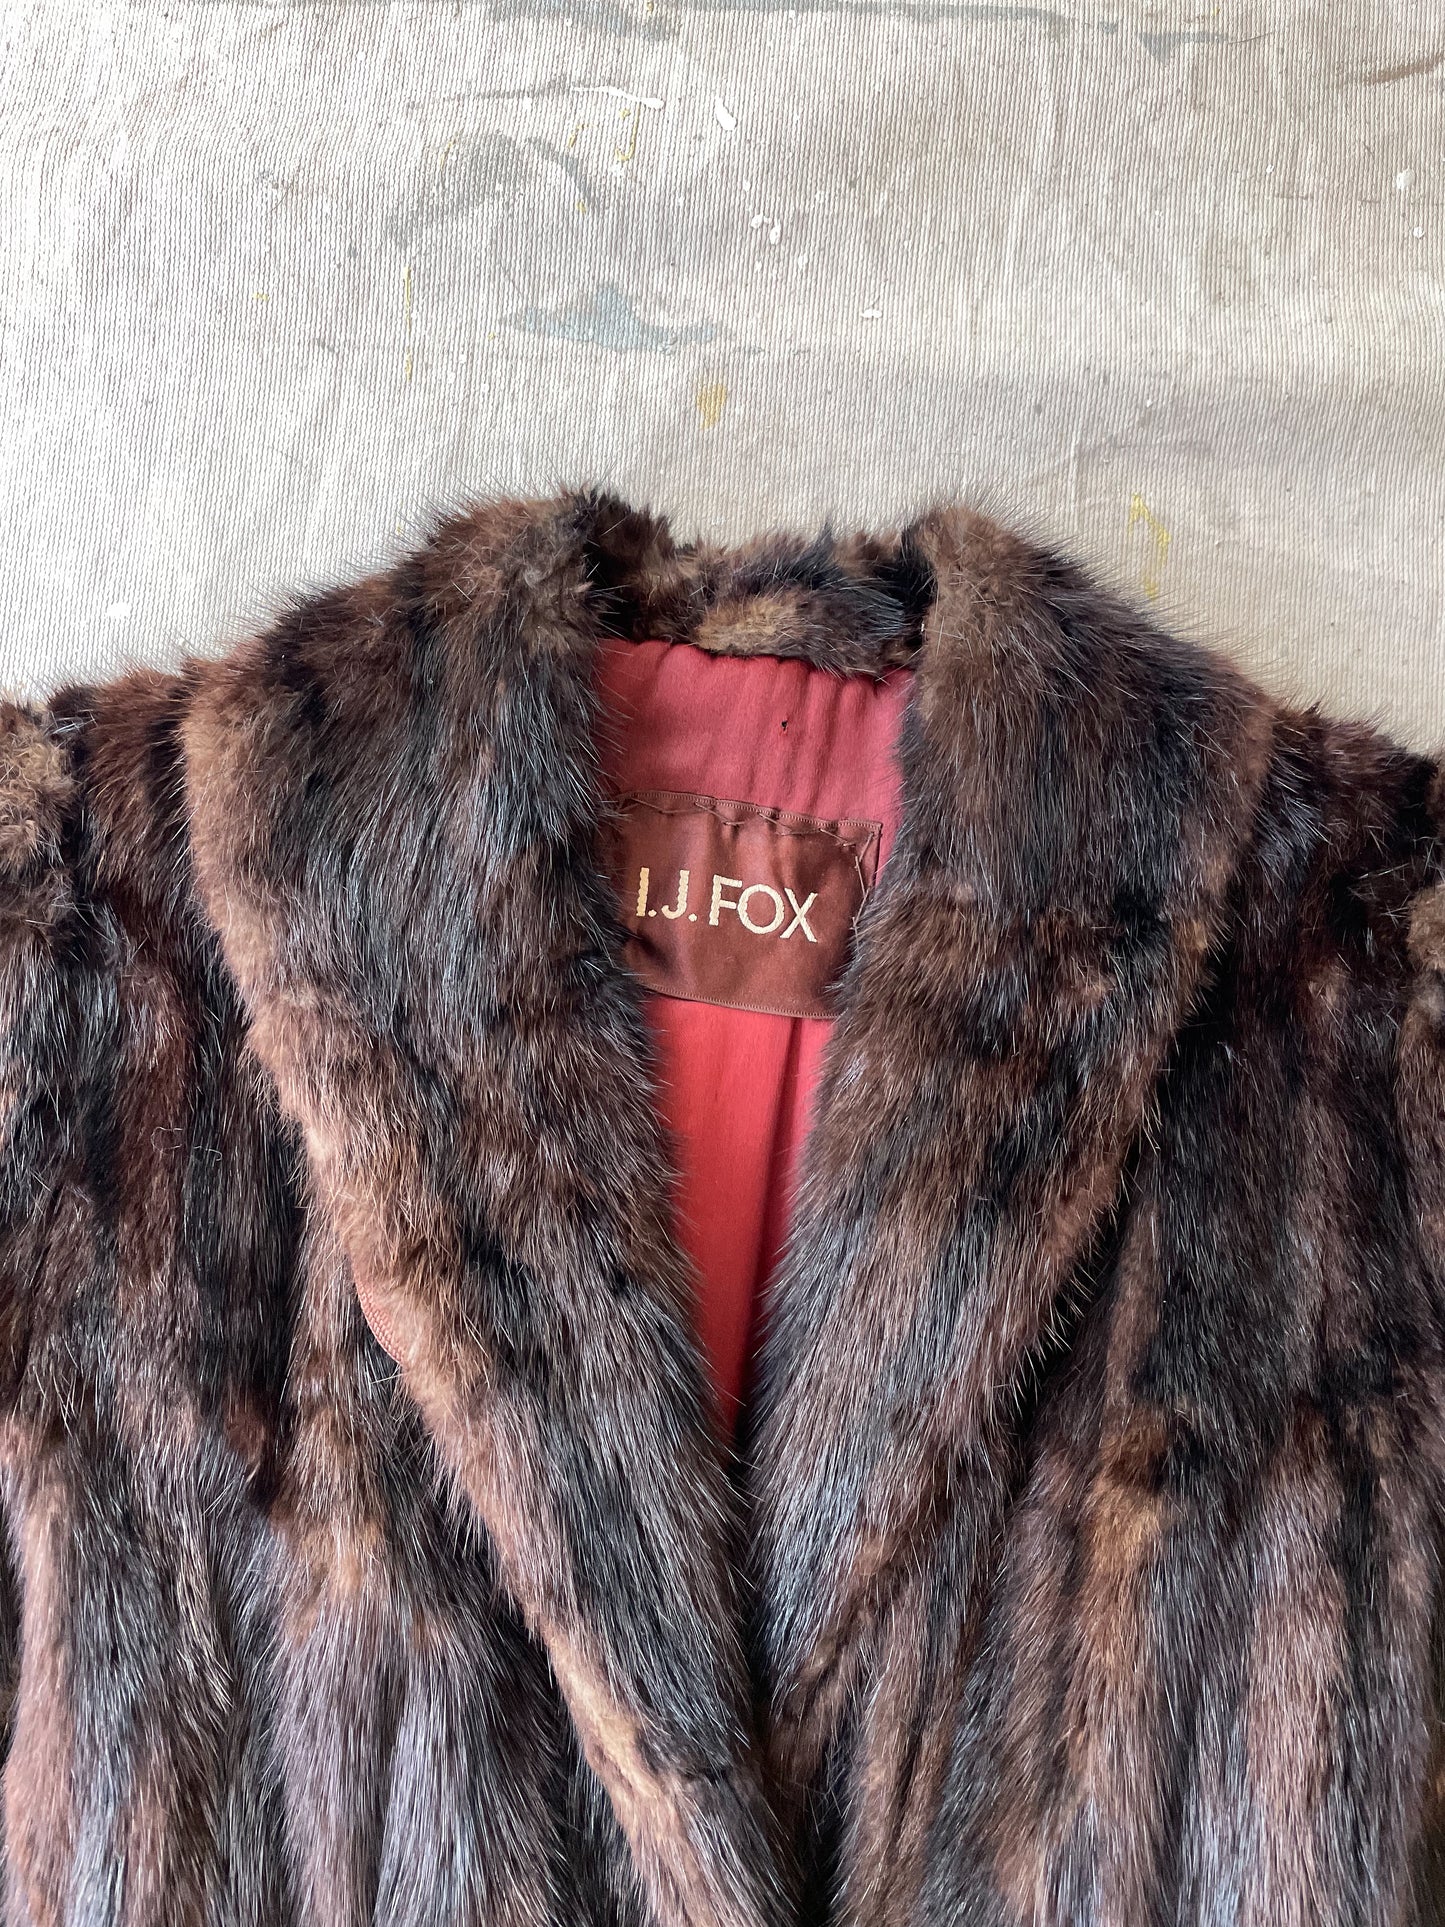 I.J.FOX Fur Coat—[L]